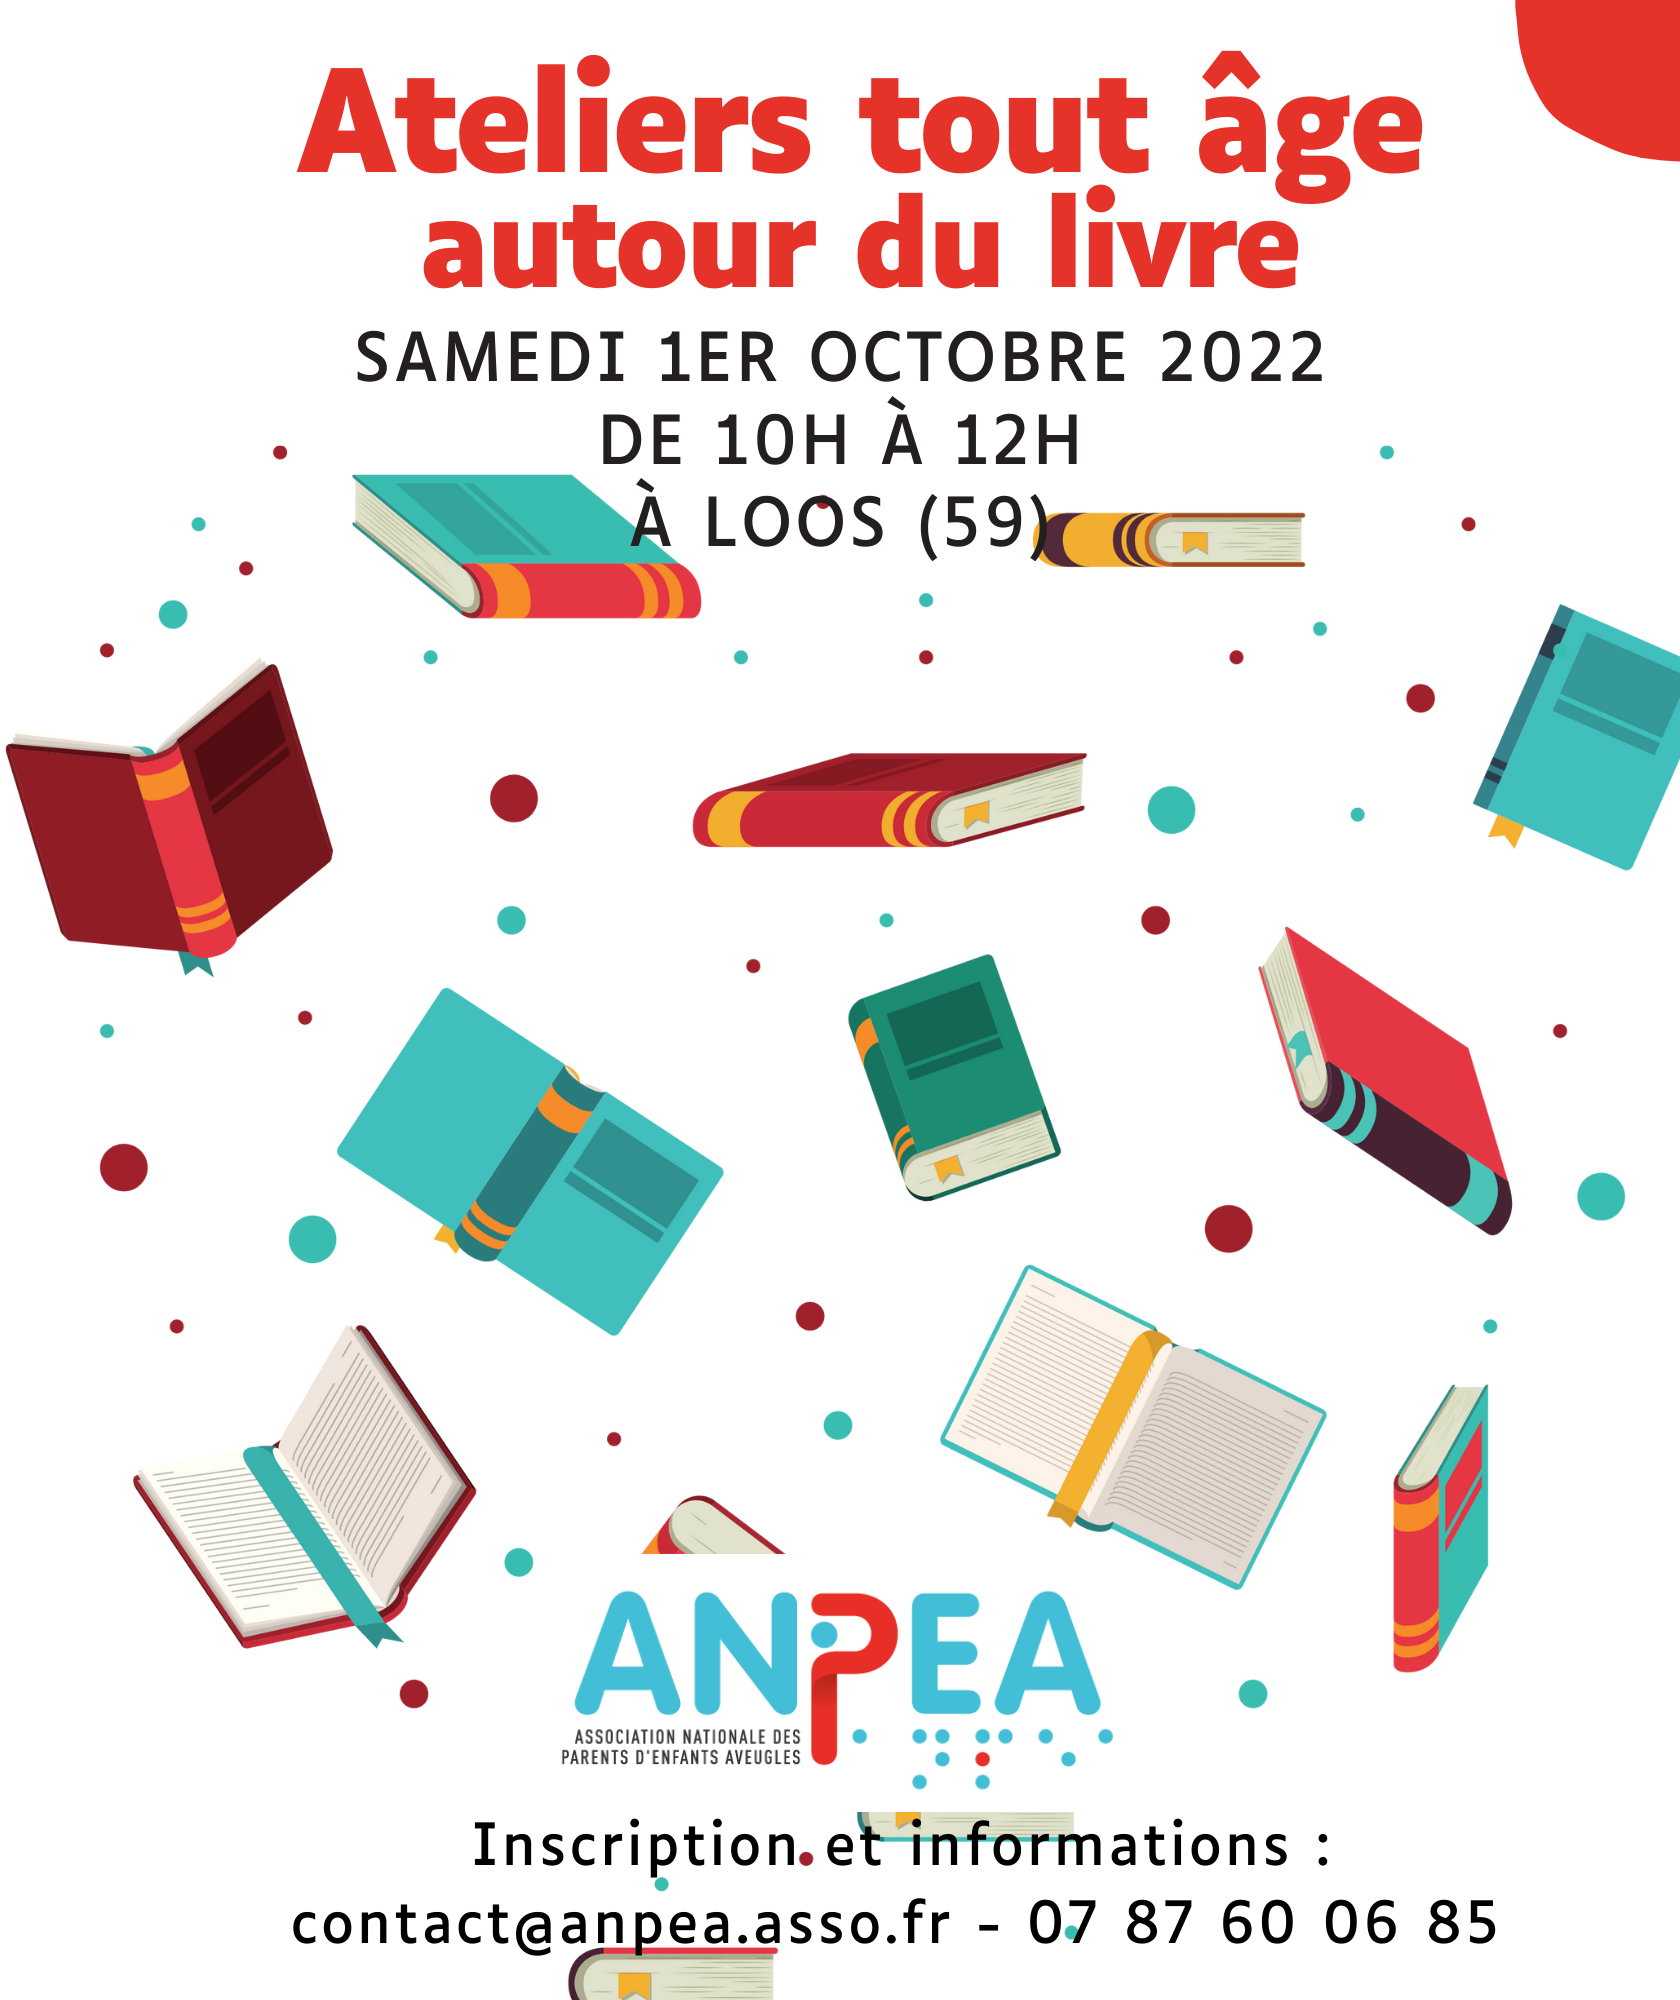 Affiche de l'événement aves des dessins de livres qui s'envolent autour du logo de l'ANPEA